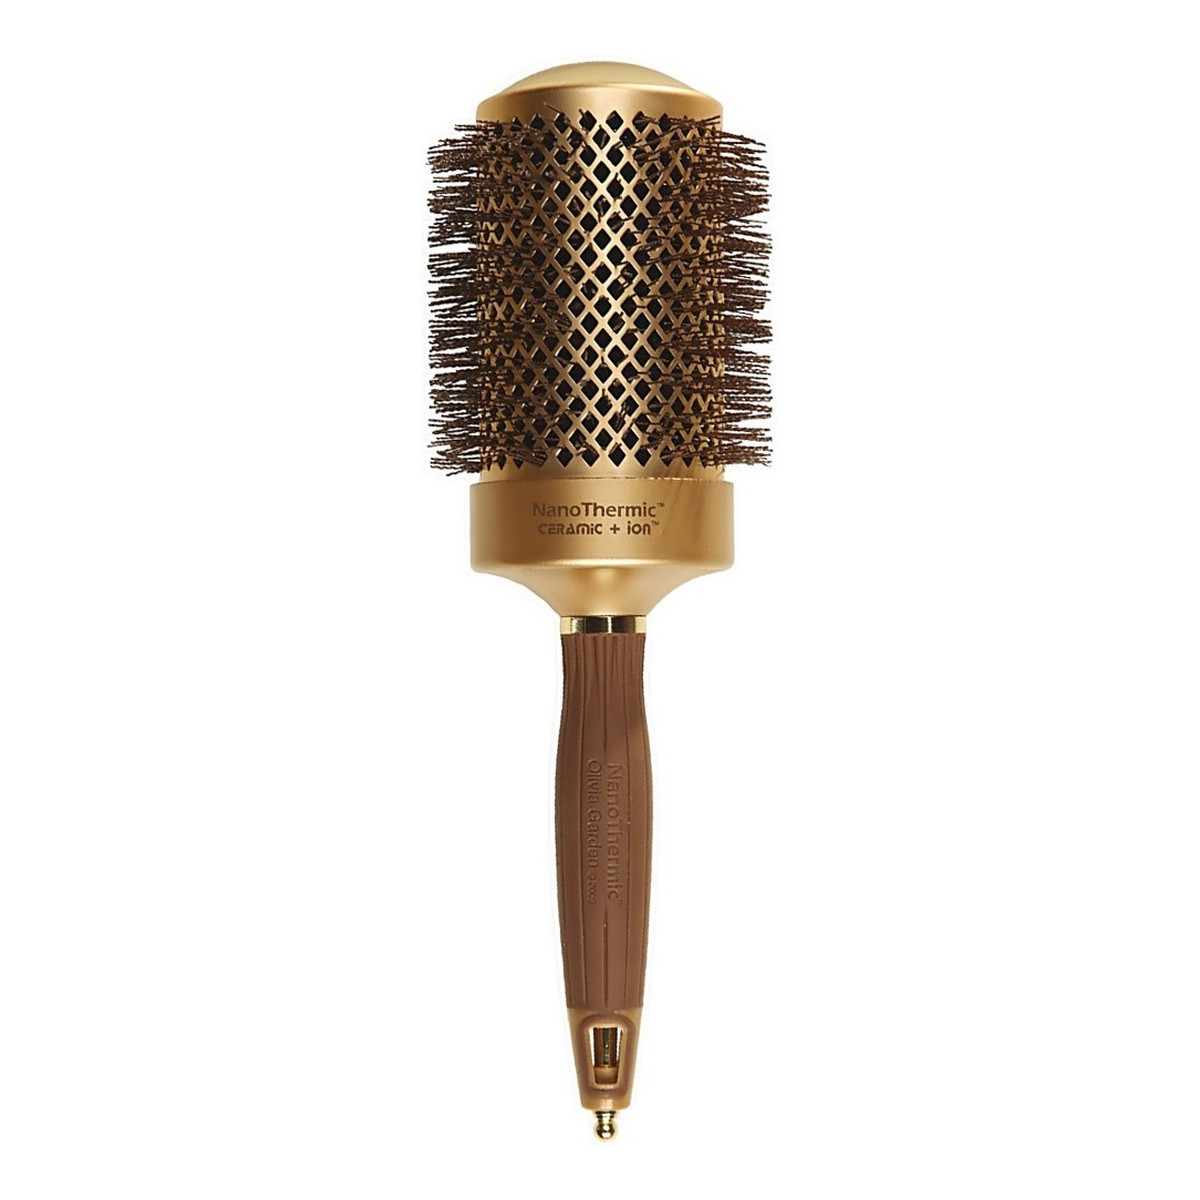 Olivia Garden Nano thermic ceramic+ion round thermal hairbrush szczotka do włosów nt-64